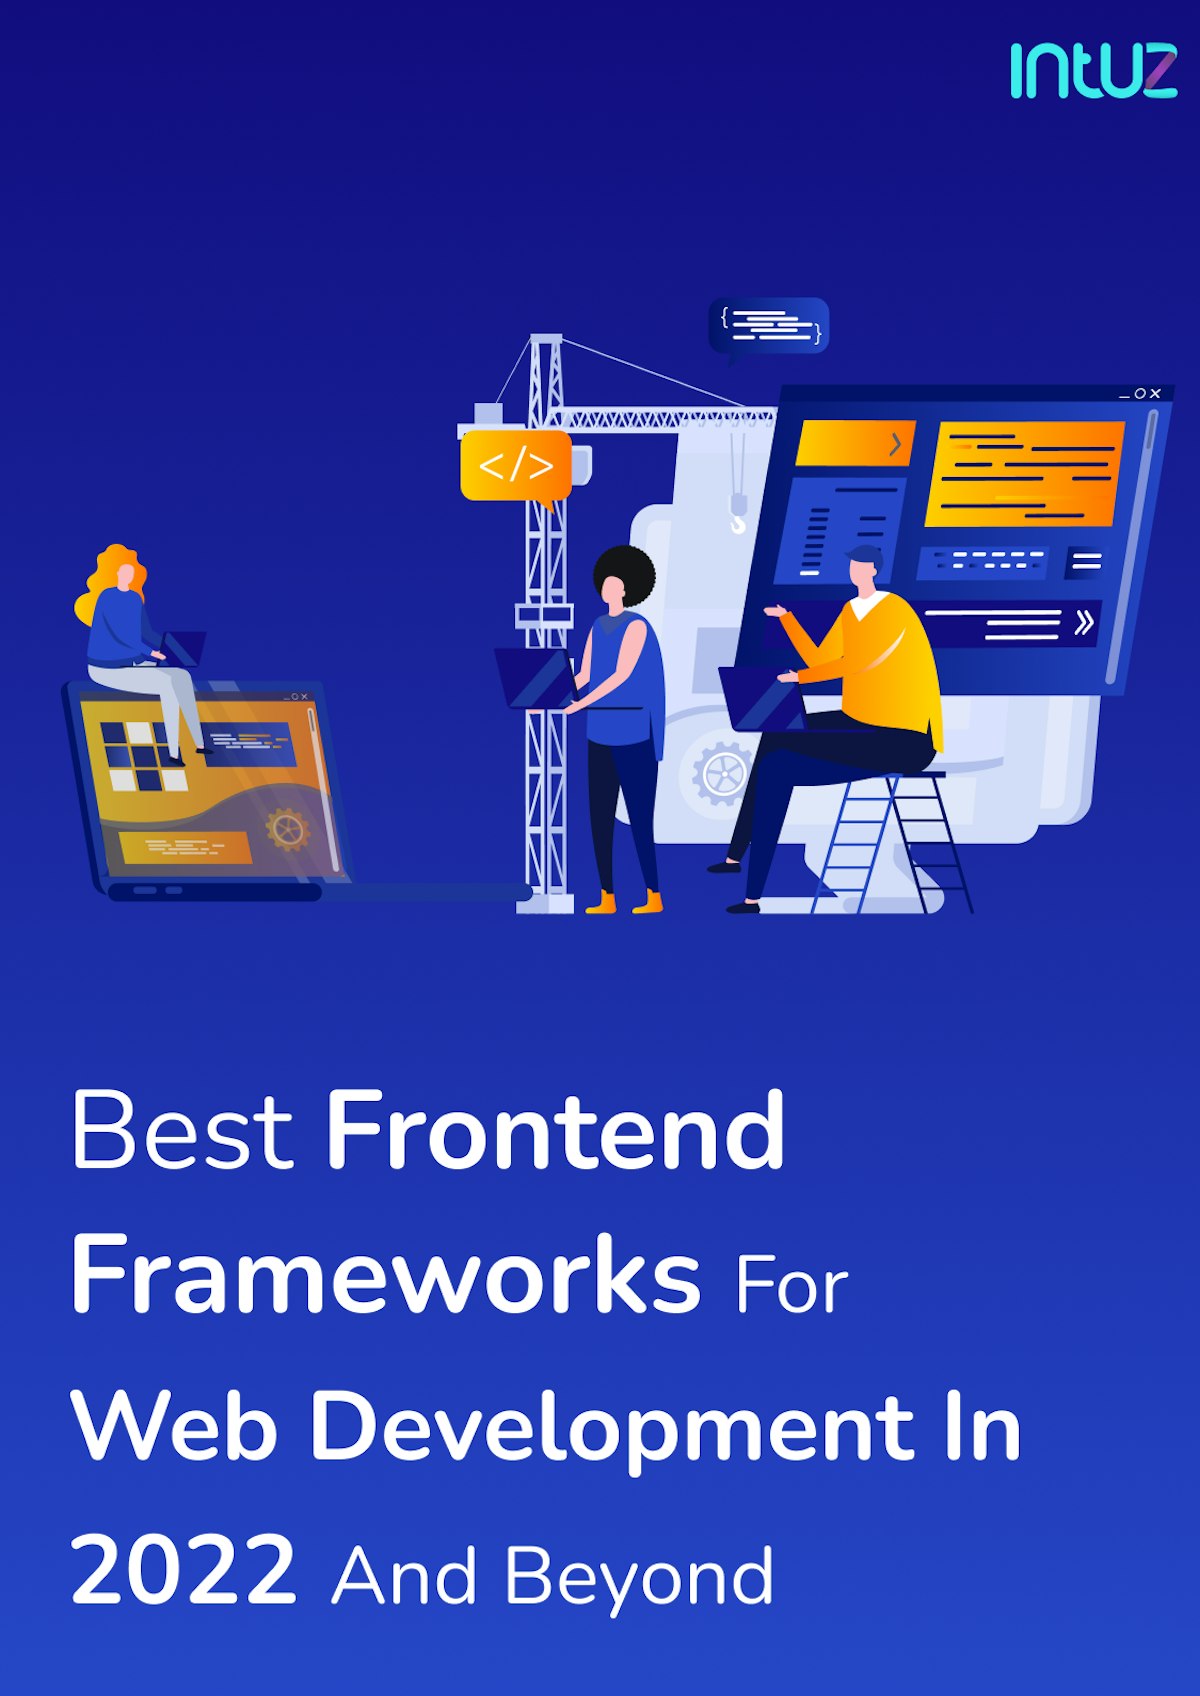 Frontend Frameworks - Guide 